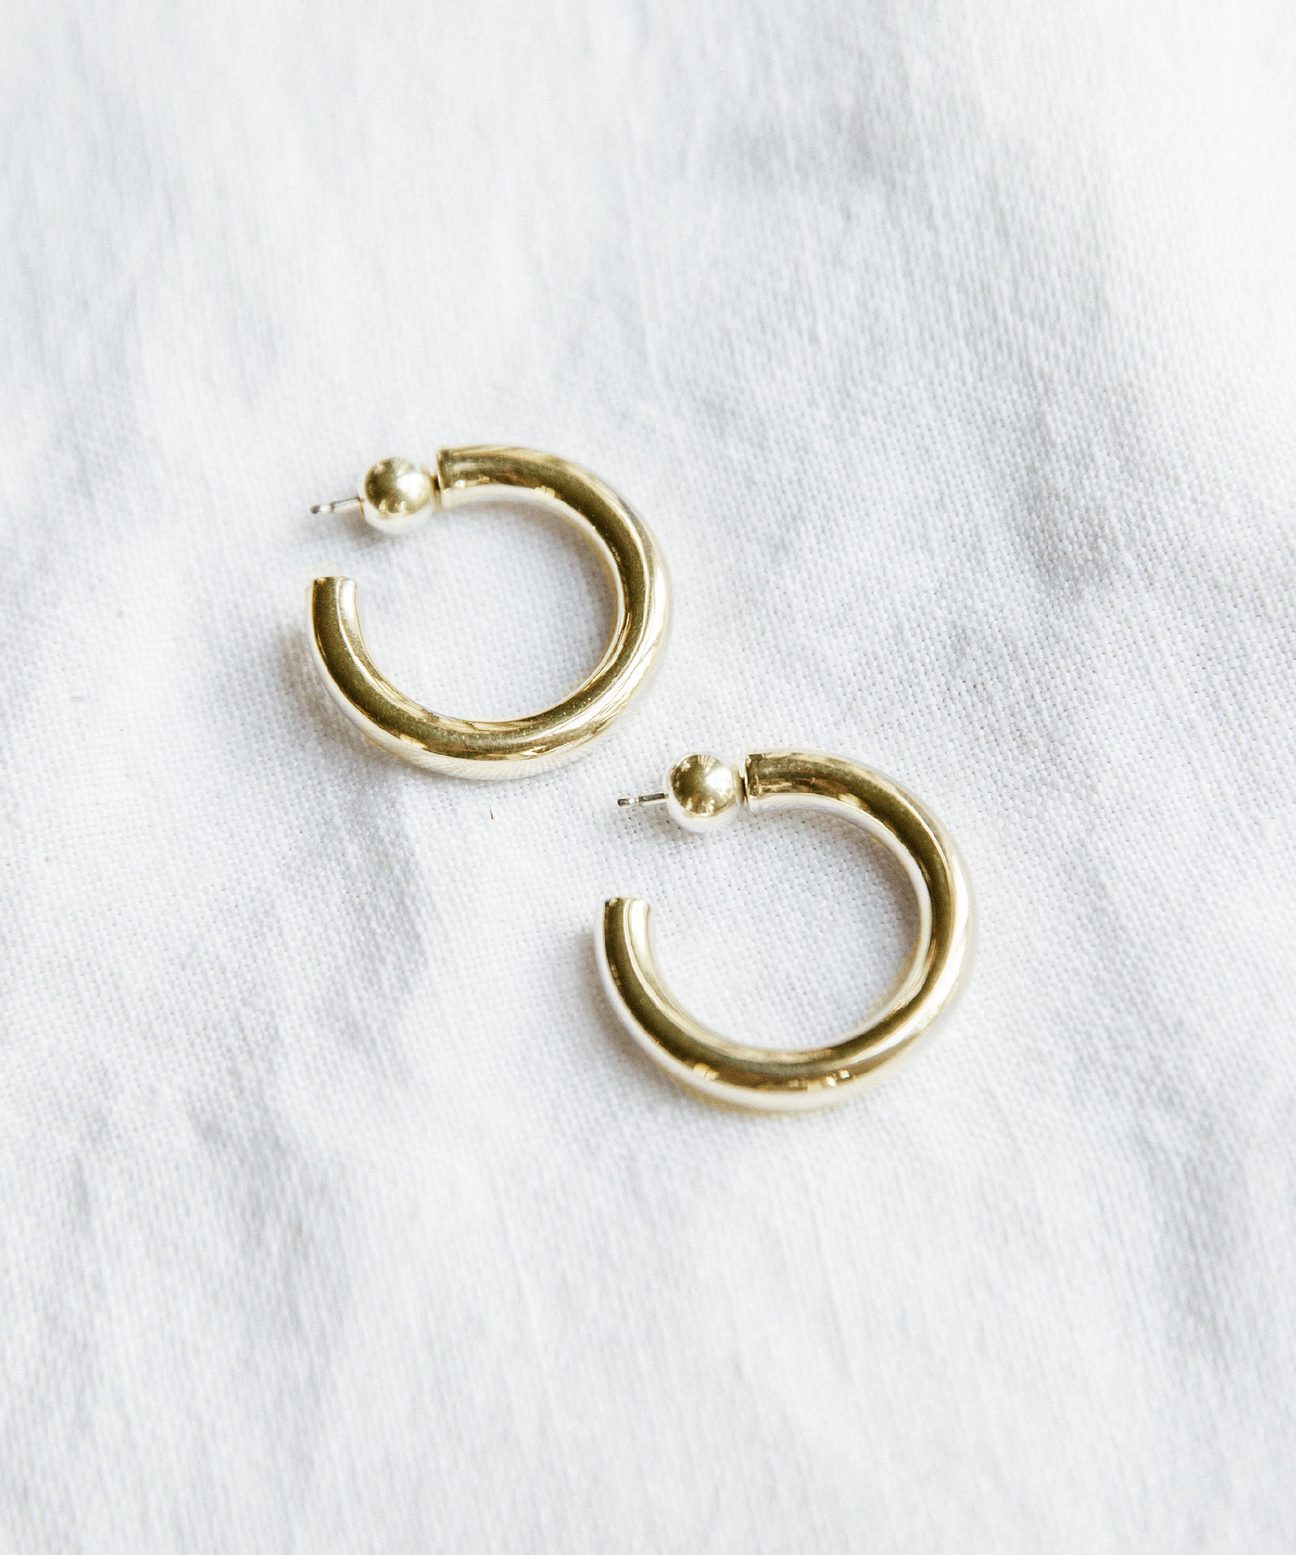 Lightweight Hoop Earrings Hoop Earrings Gold Hoop Earrings Beaded Hoop Earrings Small Hoop Earrings Green Earrings women\u2019s Jewelry